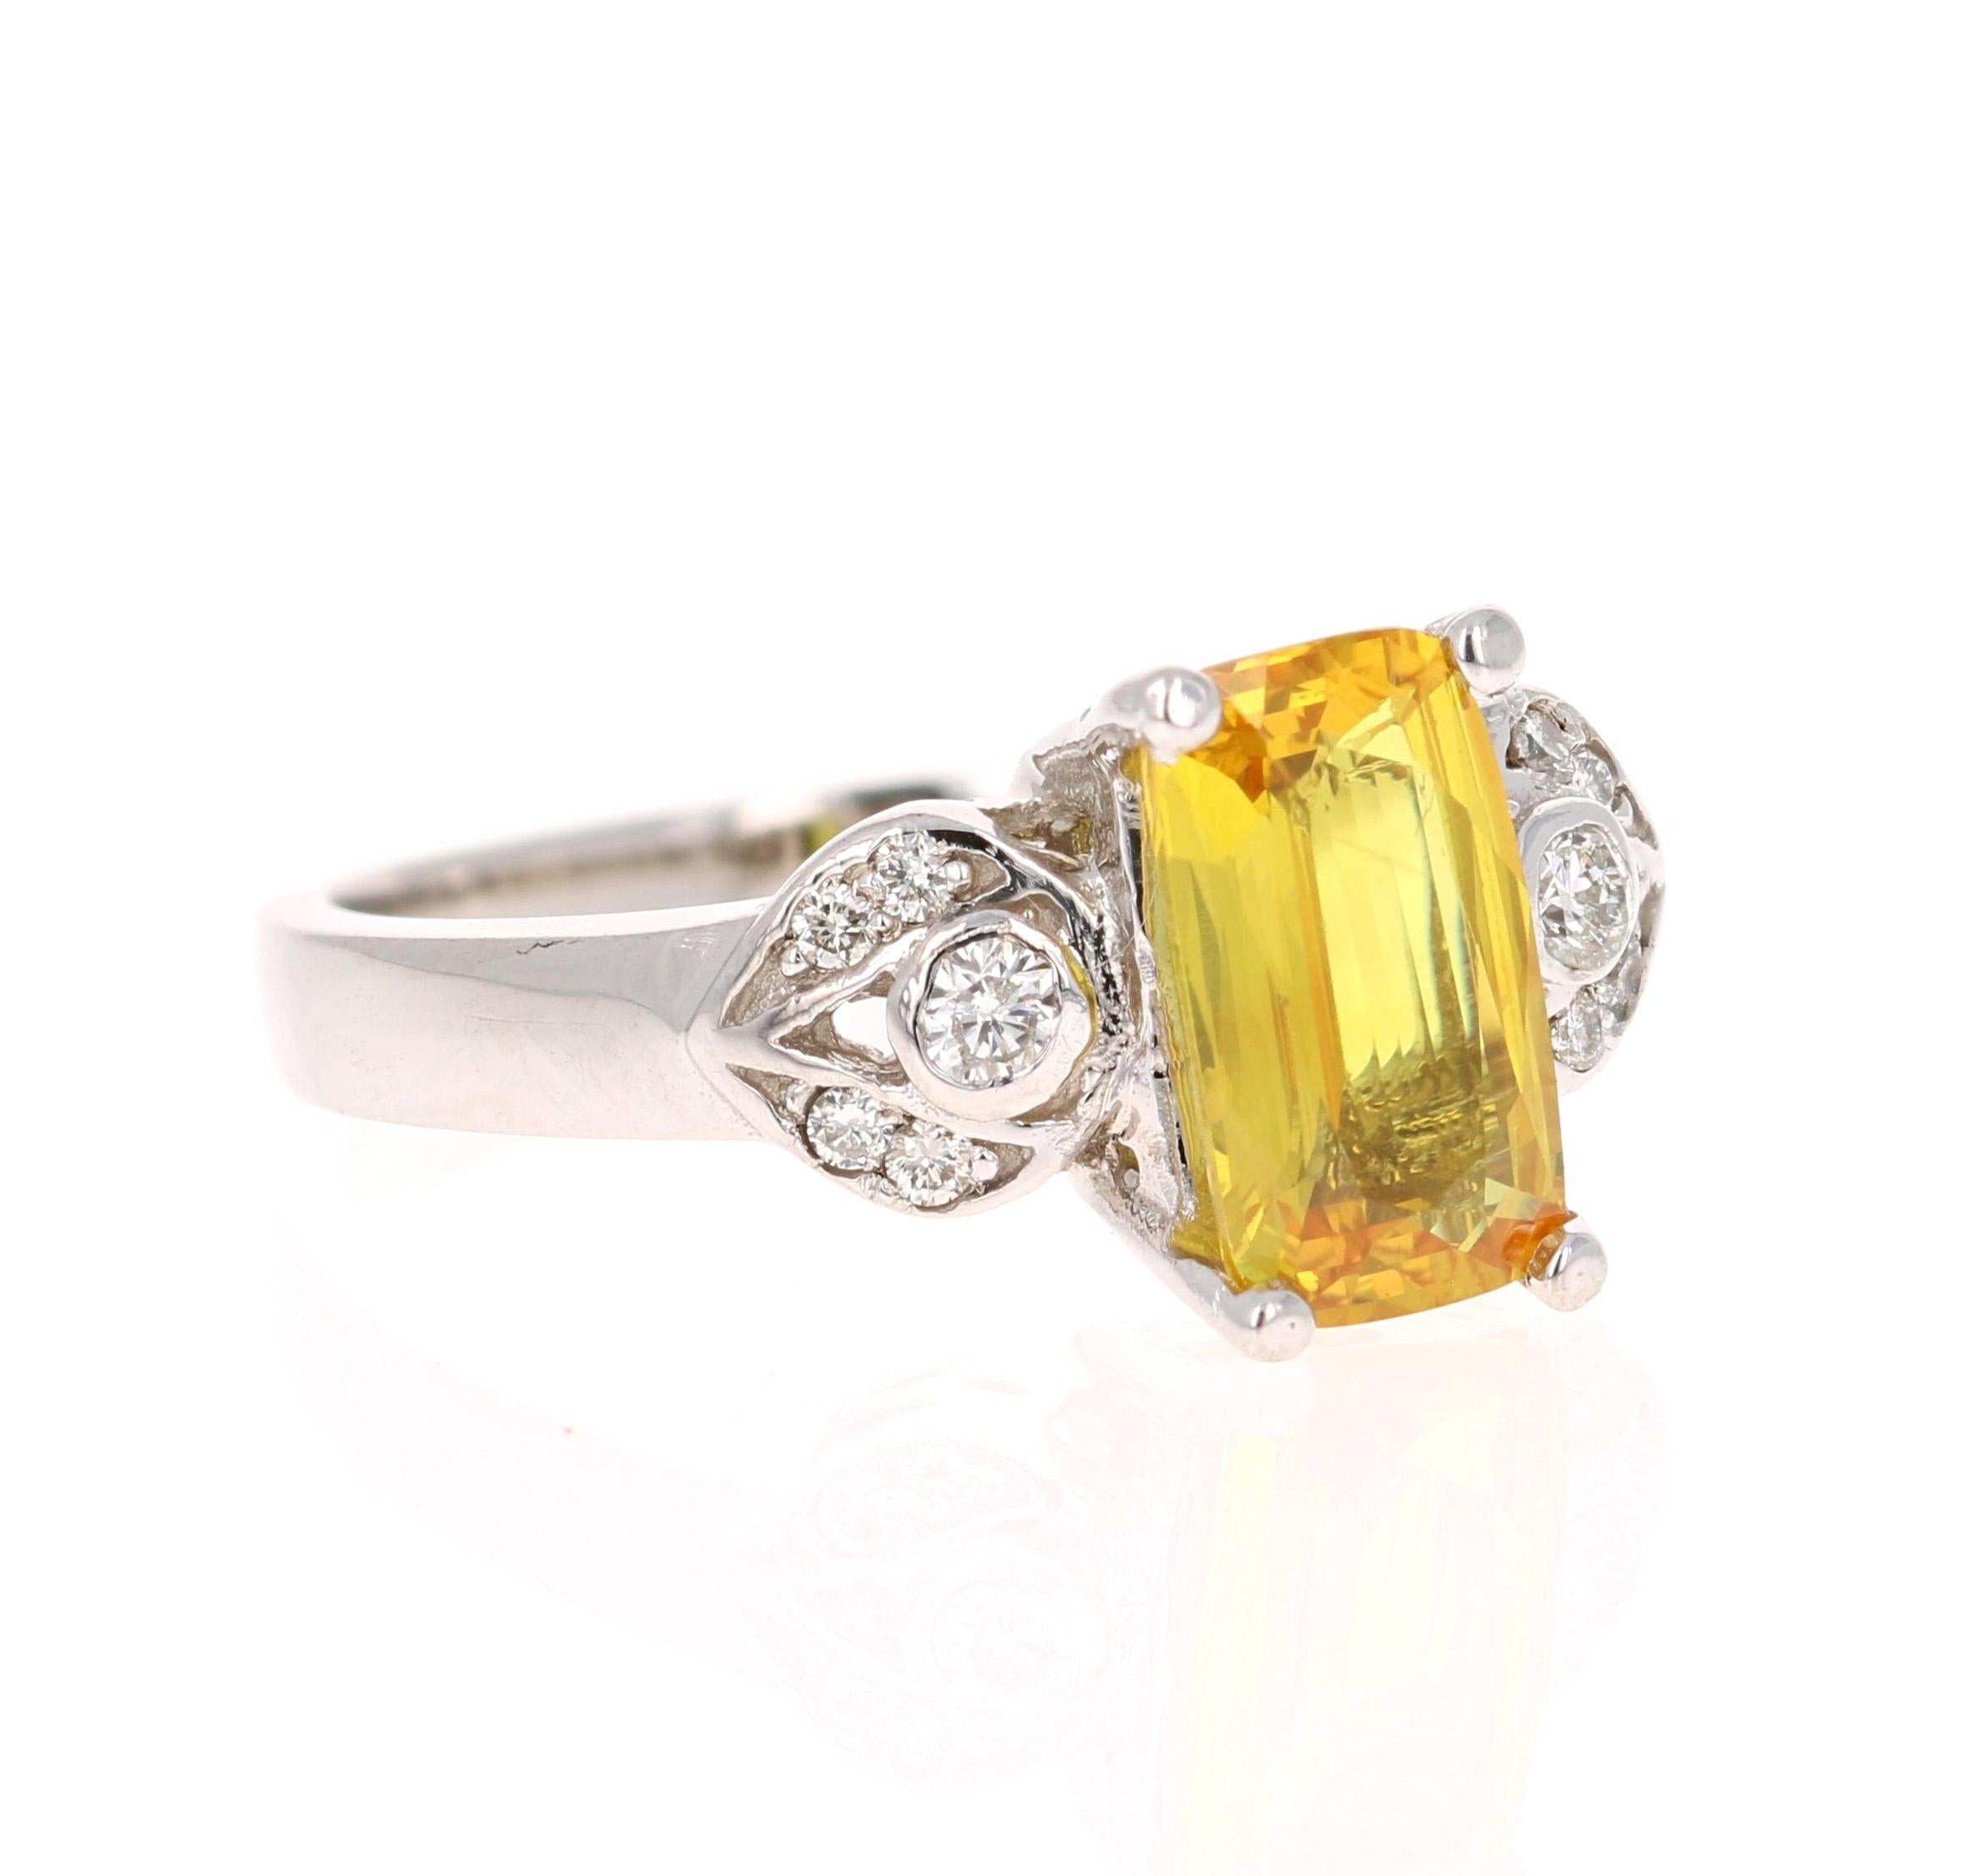 Dieser wunderschöne Ring hat einen gelben Saphir im Smaragdschliff, der 1,94 Karat wiegt. Er ist umgeben von 10 Diamanten im Rundschliff mit einem Gewicht von 0,17 Karat. (Reinheit: VS, Farbe: H) 
Der Gelbe Saphir misst 7 mm x 8 mm und hat Anzeichen